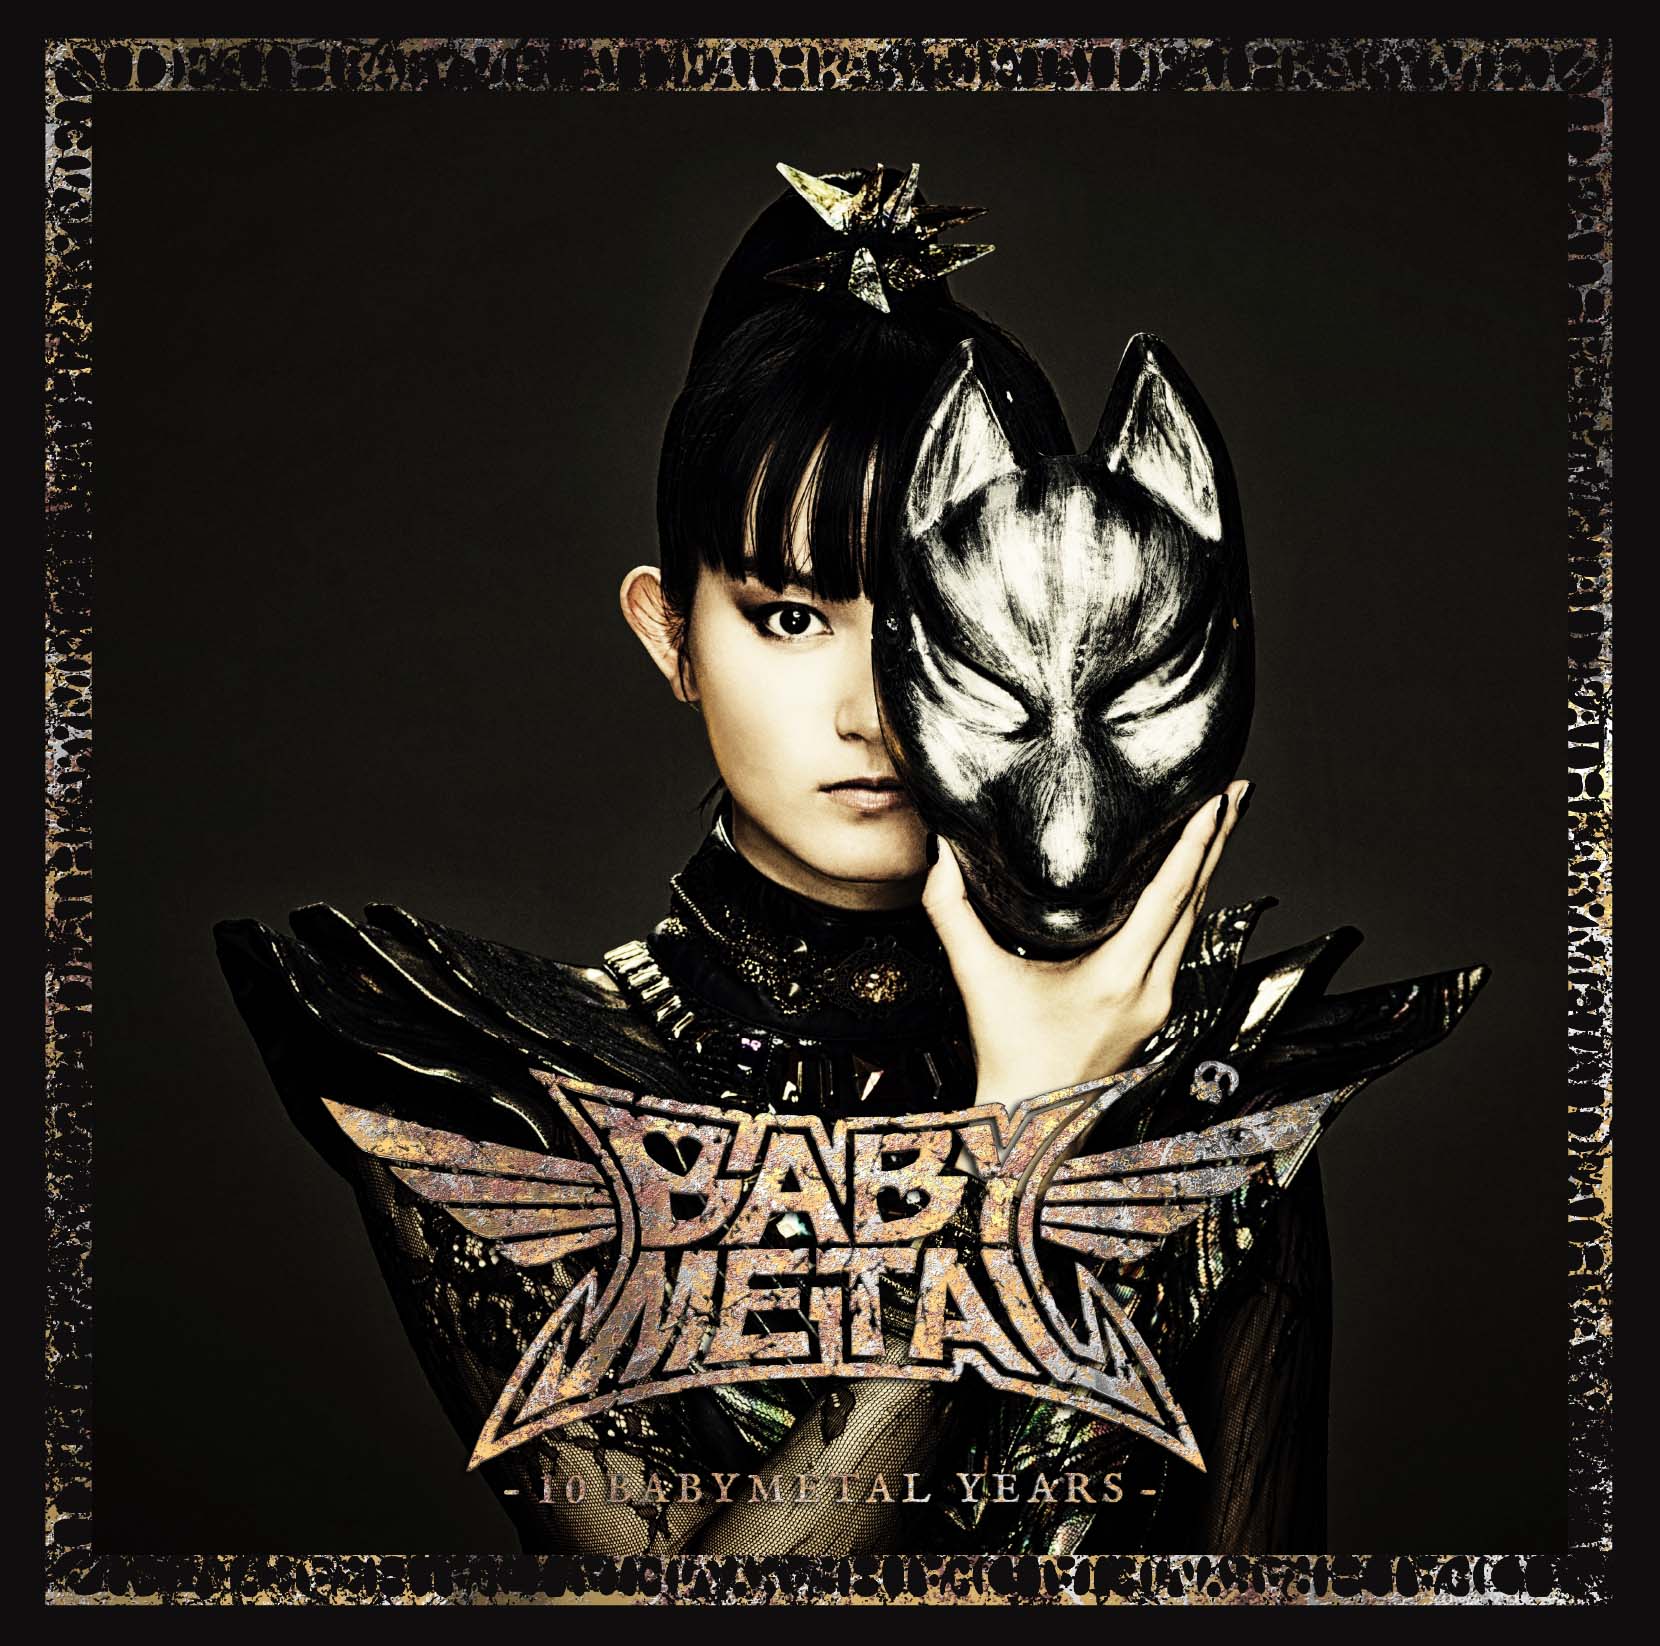 Babymetal 精選輯 10 Babymetal Years 預言盤封面照公開 Moshi Moshi Nippon もしもしにっぽん